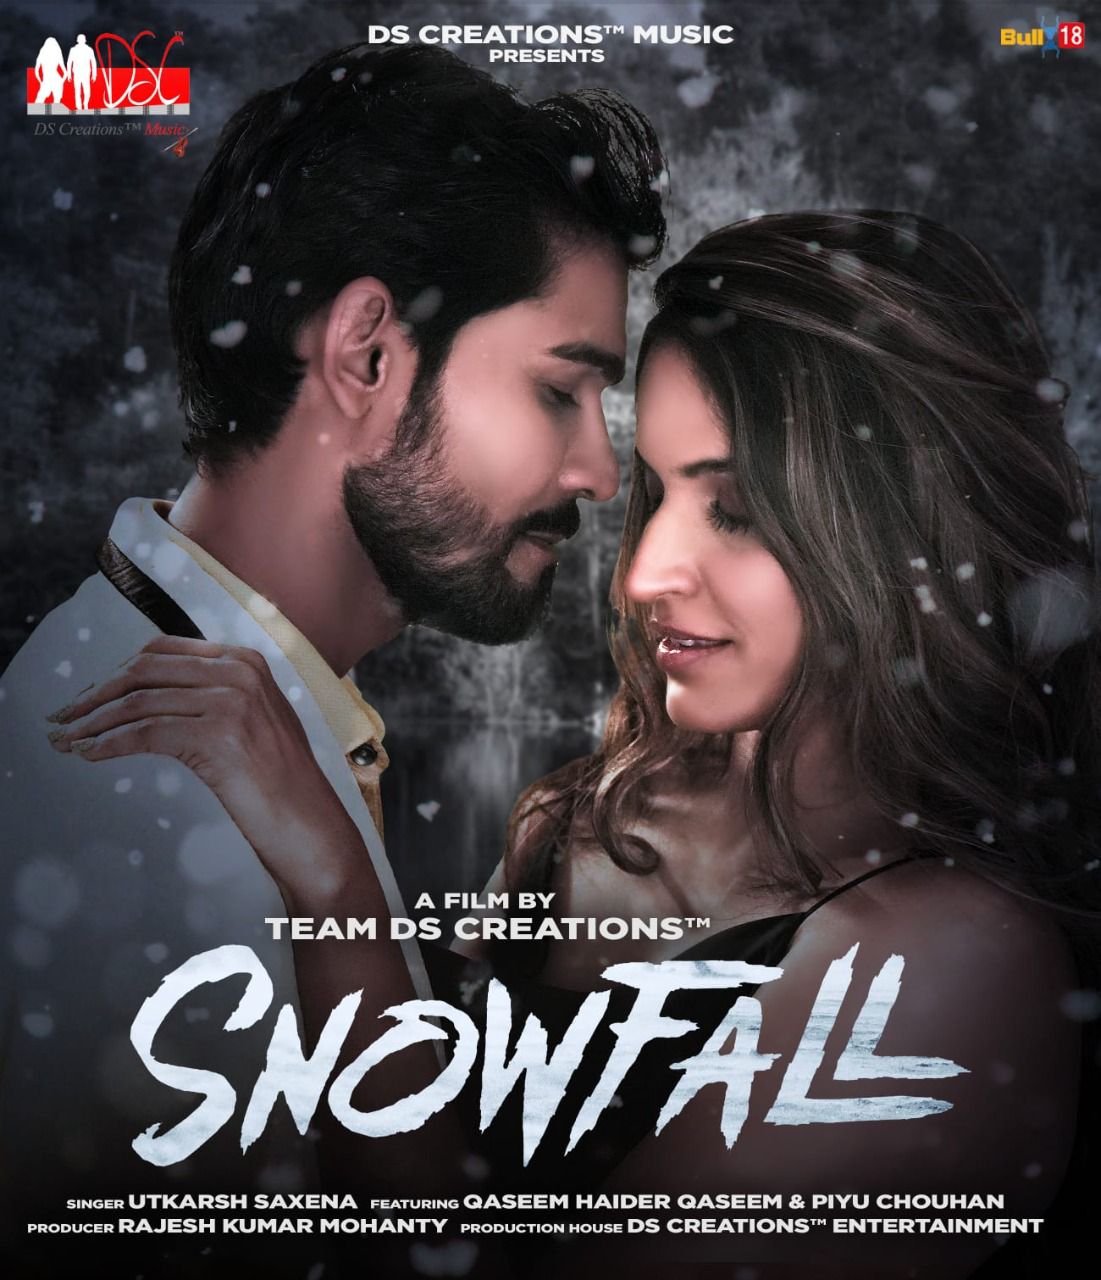 Director Dinesh Soi's Snowfall, starring Qaseem Haider Qaseem, will release this Chritsmas!